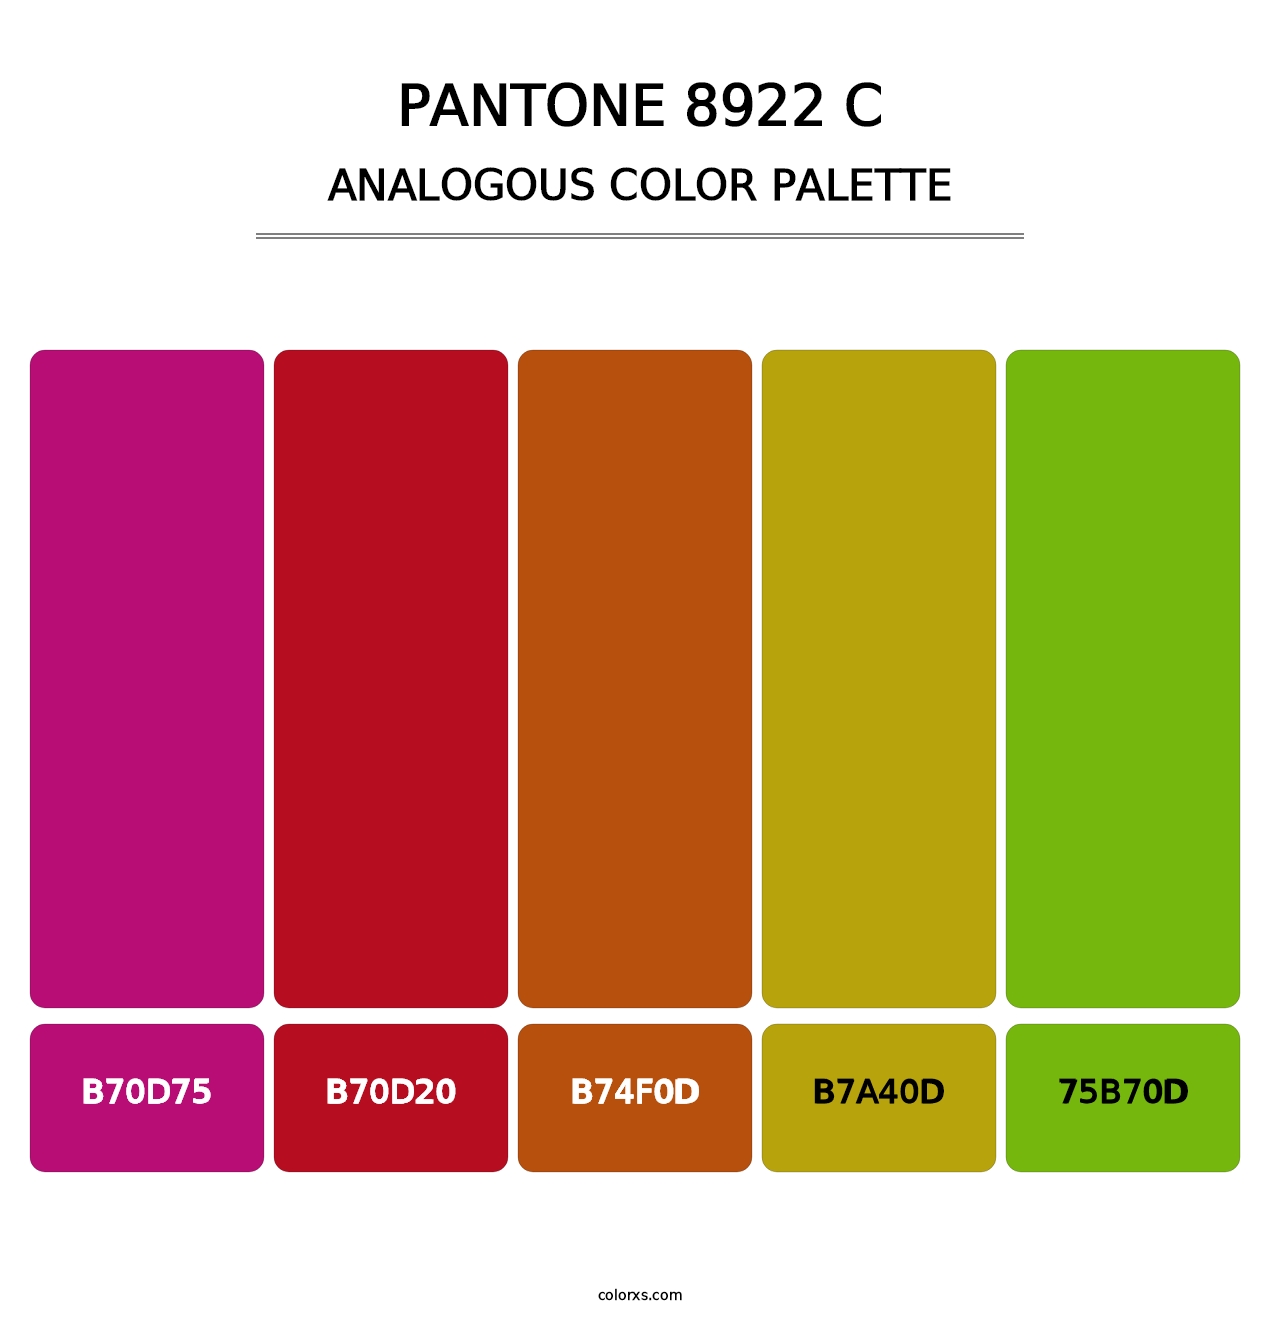 PANTONE 8922 C - Analogous Color Palette